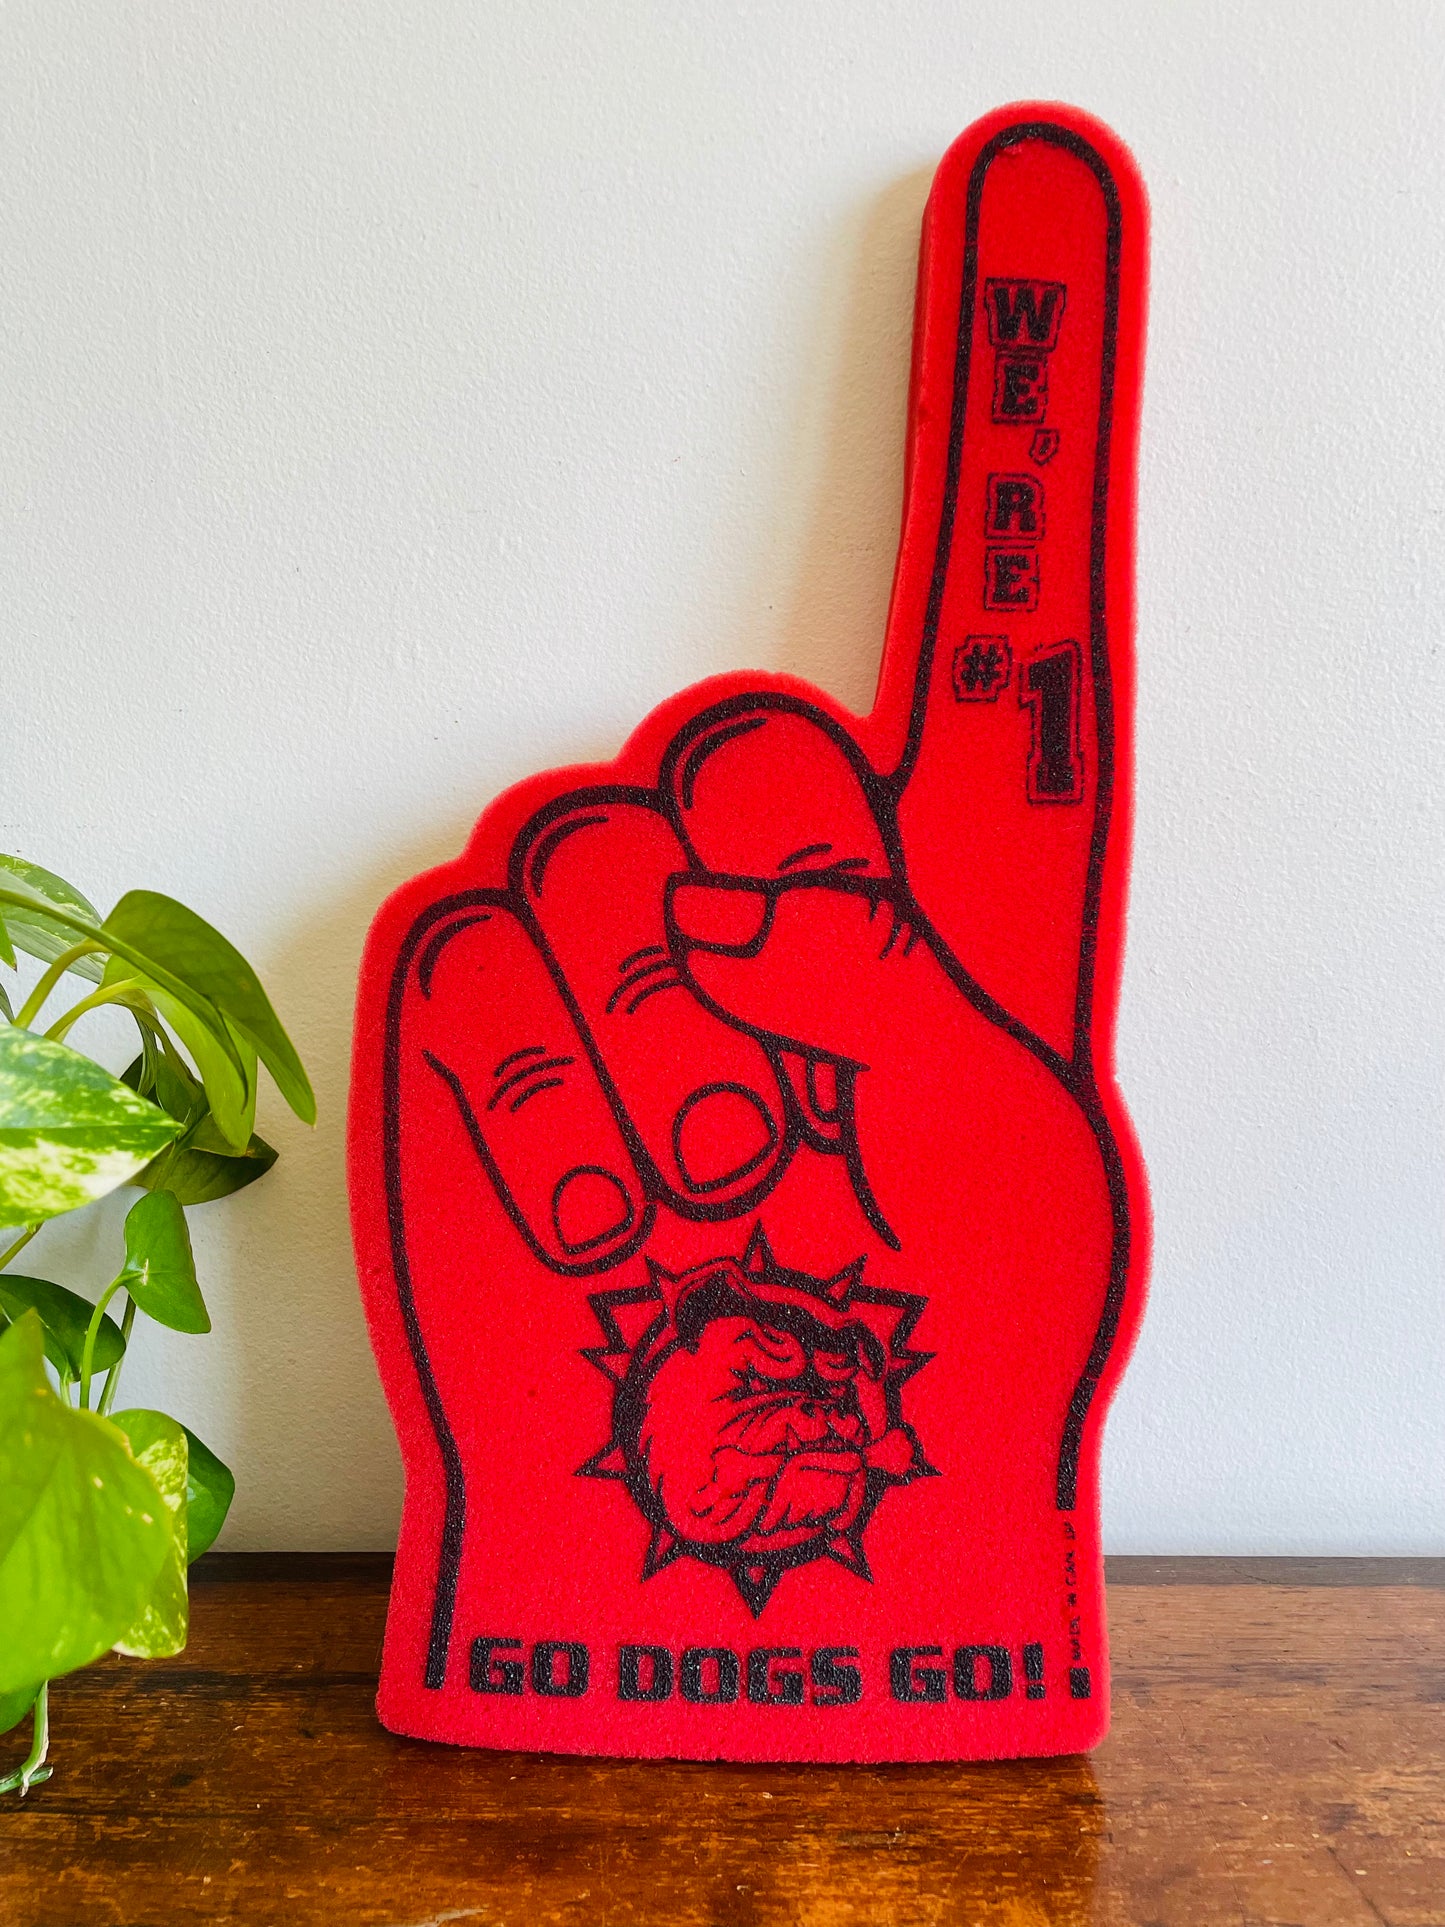 Go Dogs Go We're # 1 - Brantford Bulldogs Giant Foam Finger Hand